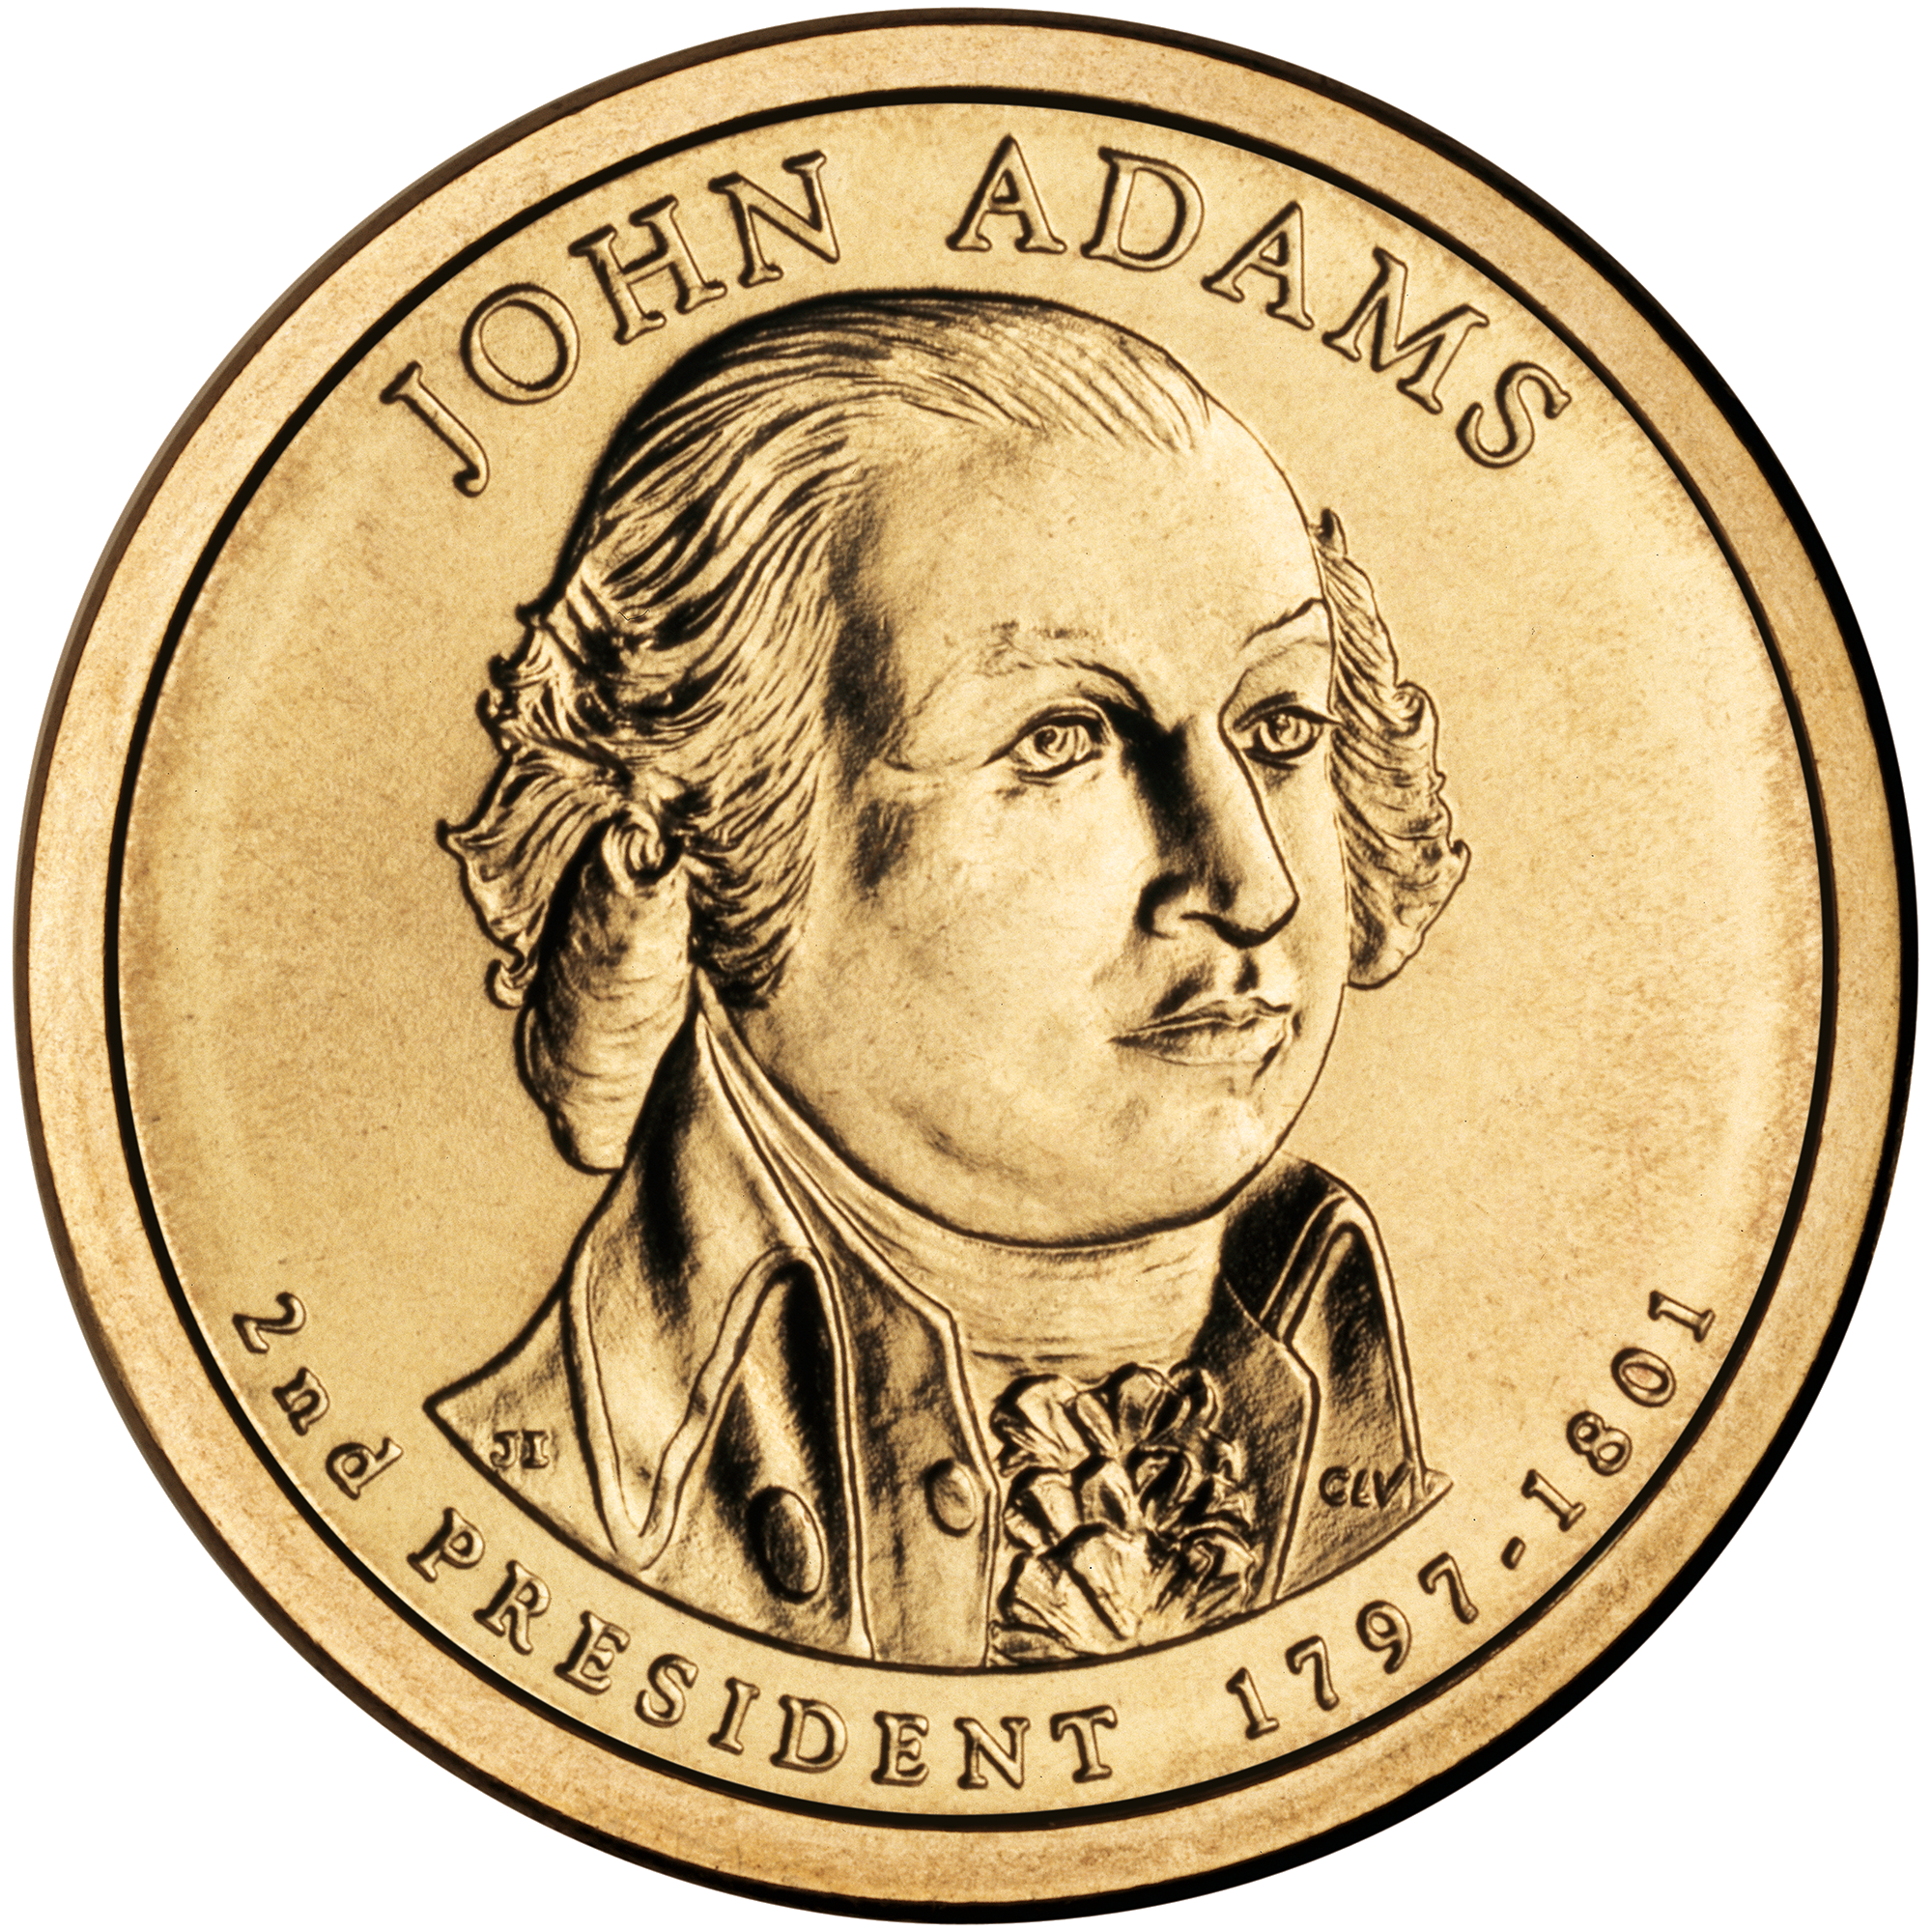 1ドル硬貨 (アメリカ合衆国) - Wikipedia